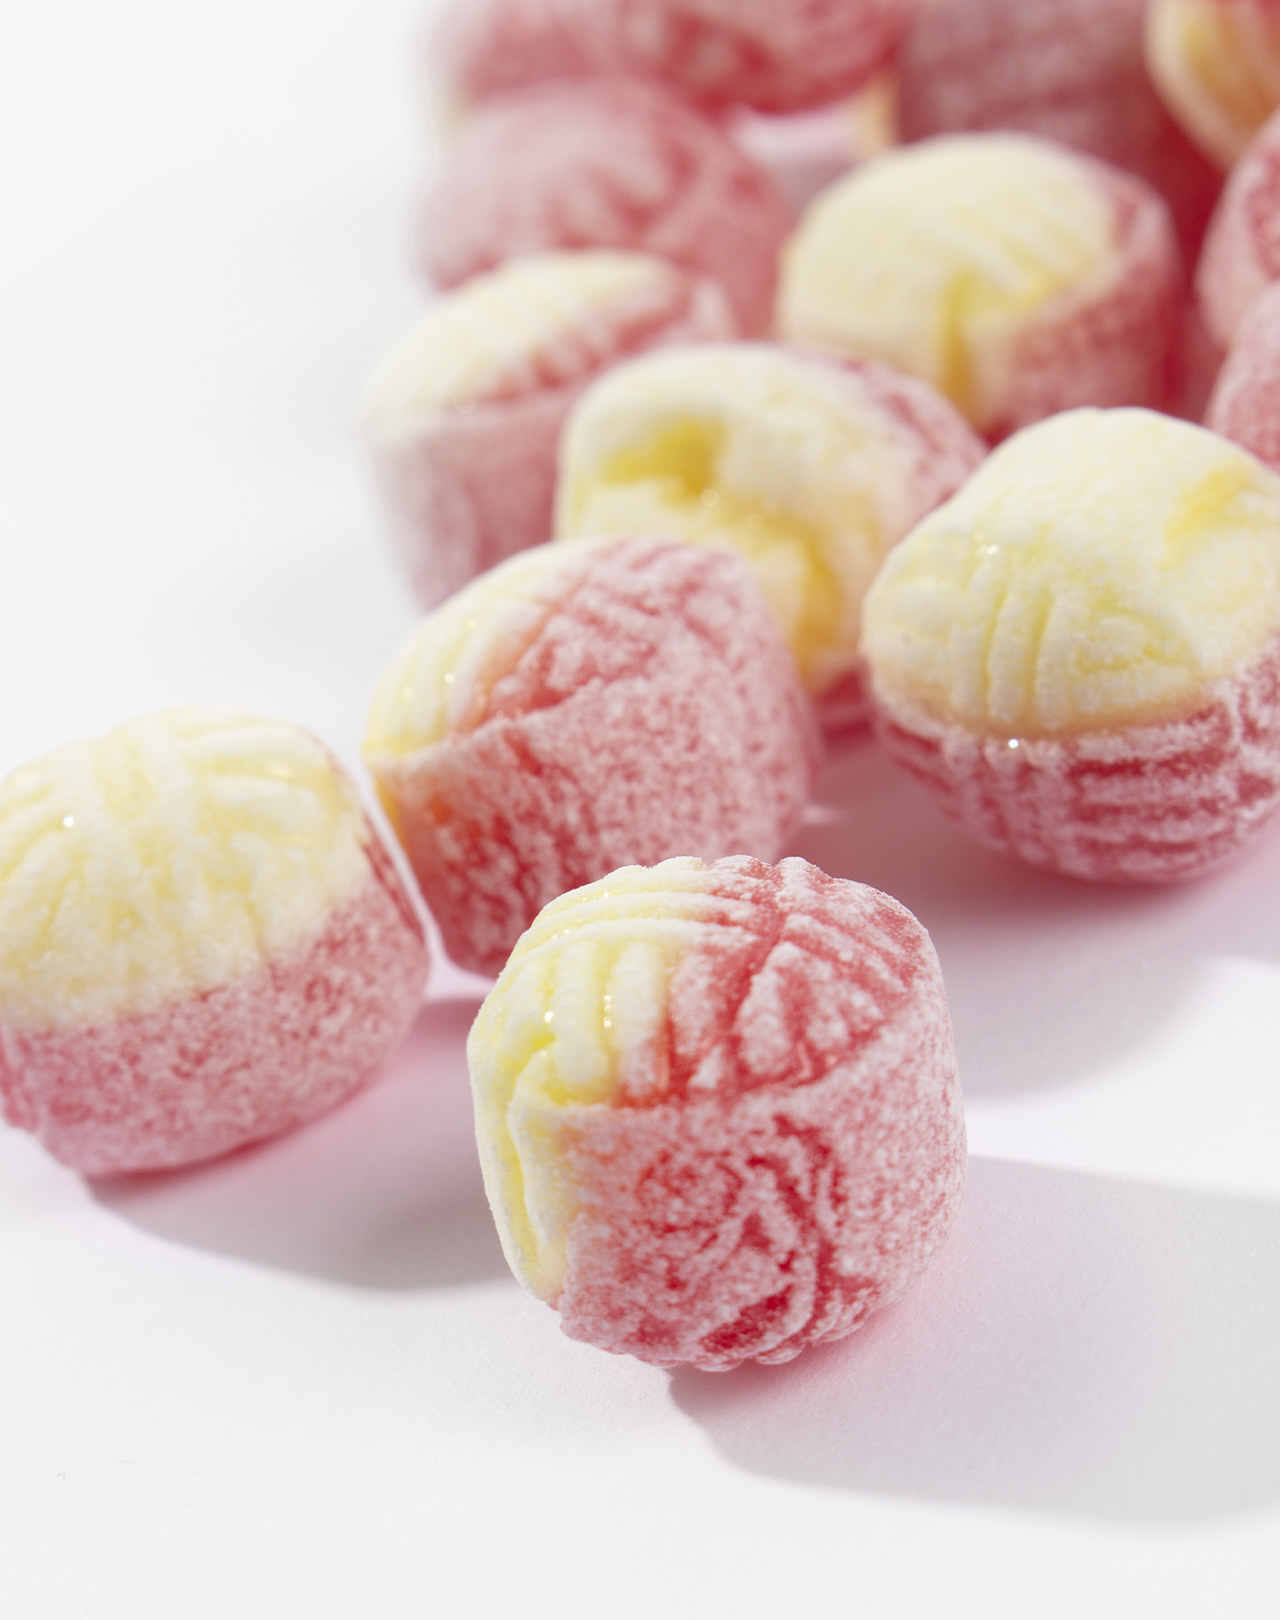 Rhabarber-Erdbeer-Vanille Bonbons